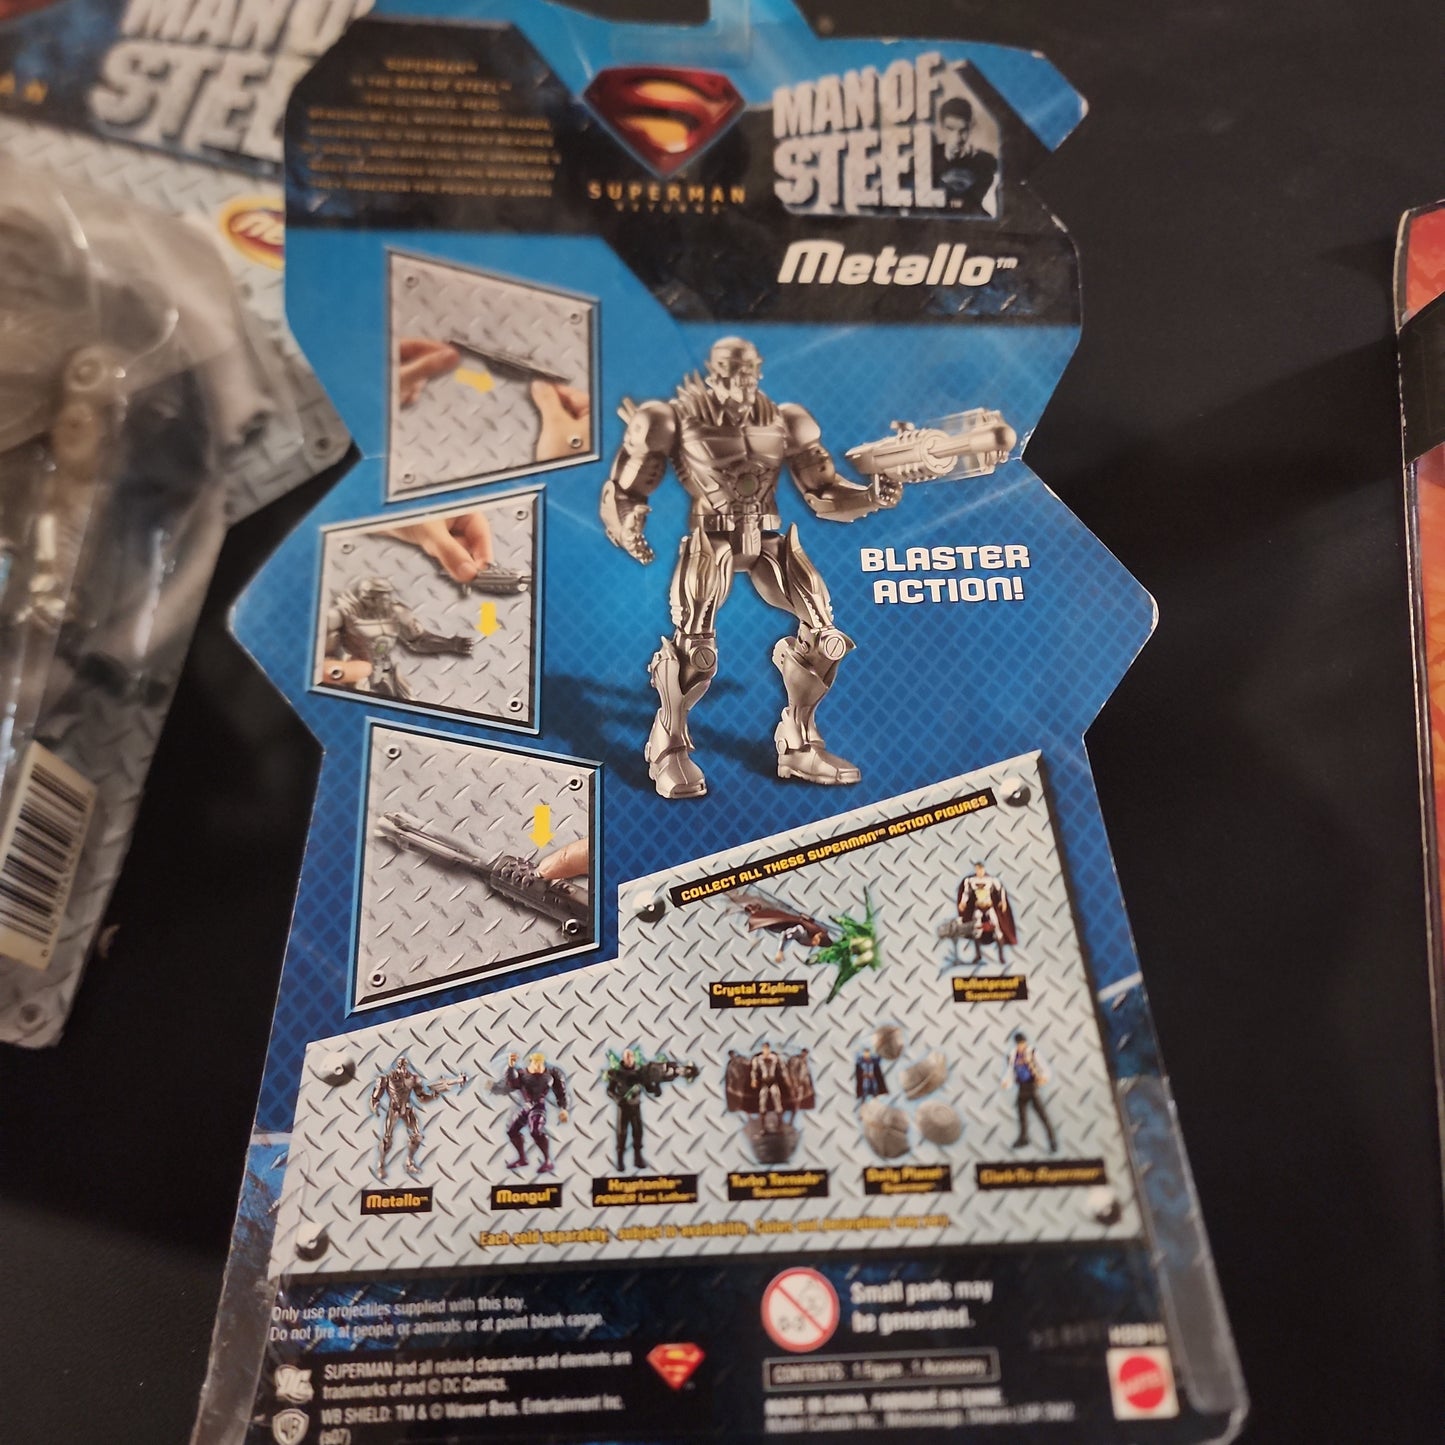 Superman Returns Man Of Steel Metallo Action Figure Mattel 2007 New On Card